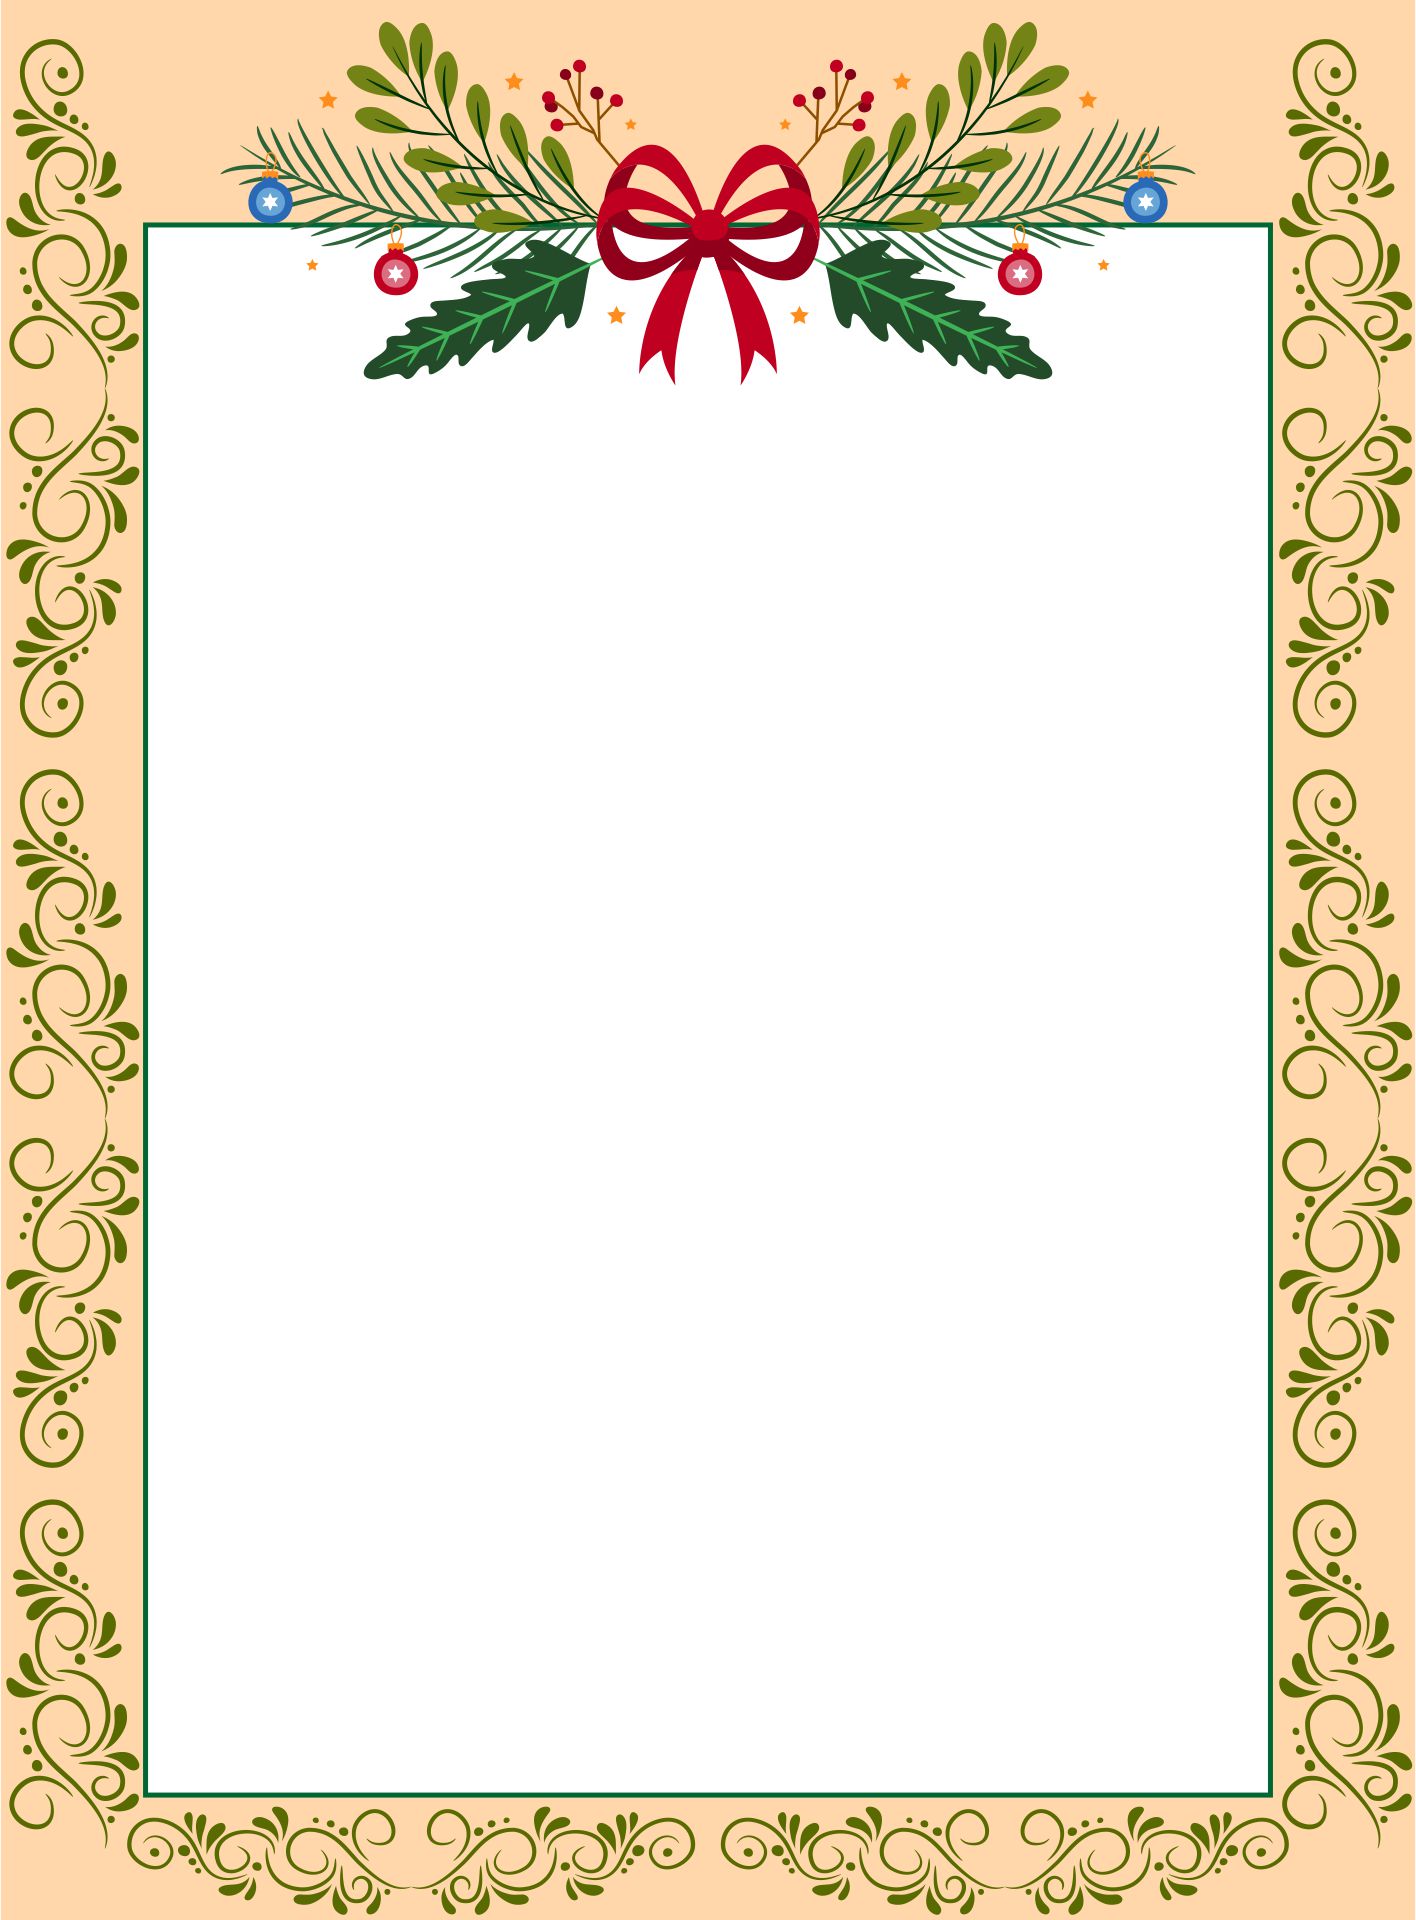 Free Printable Christmas Border